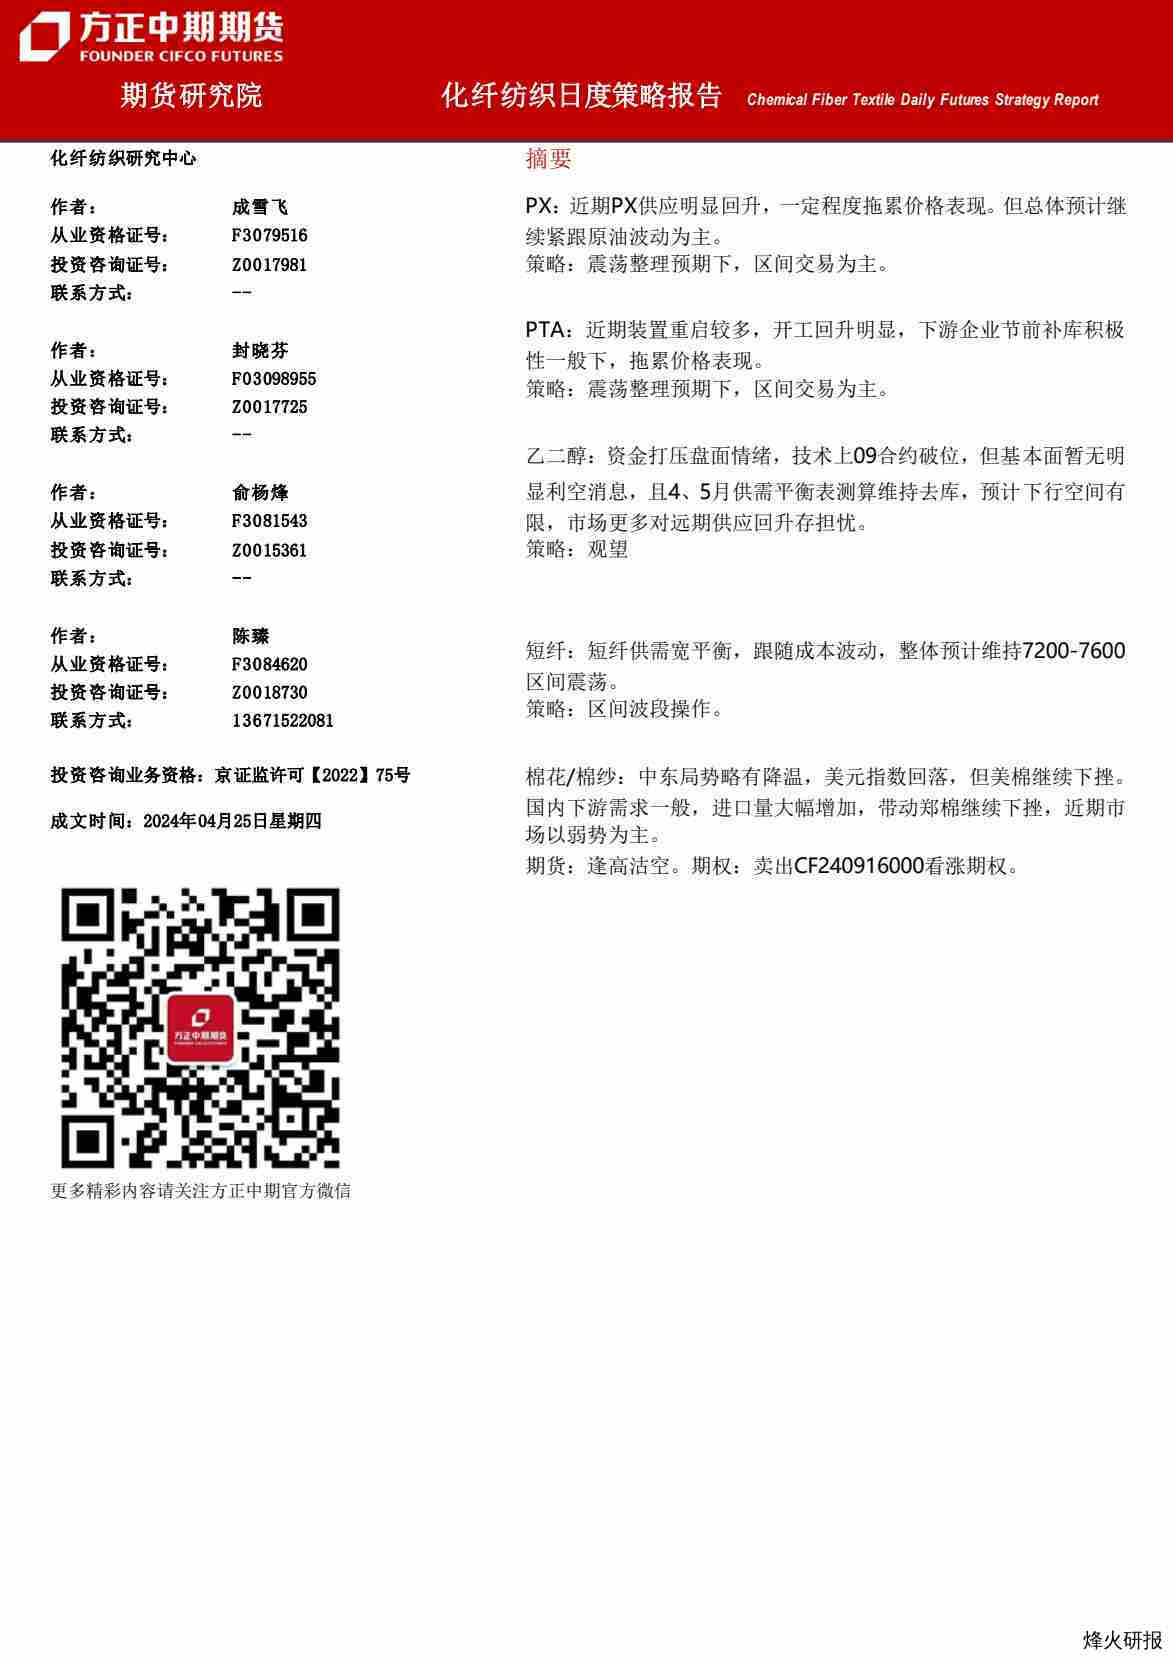 【方正中期】化纤纺织日度策略报告.pdf-第一页